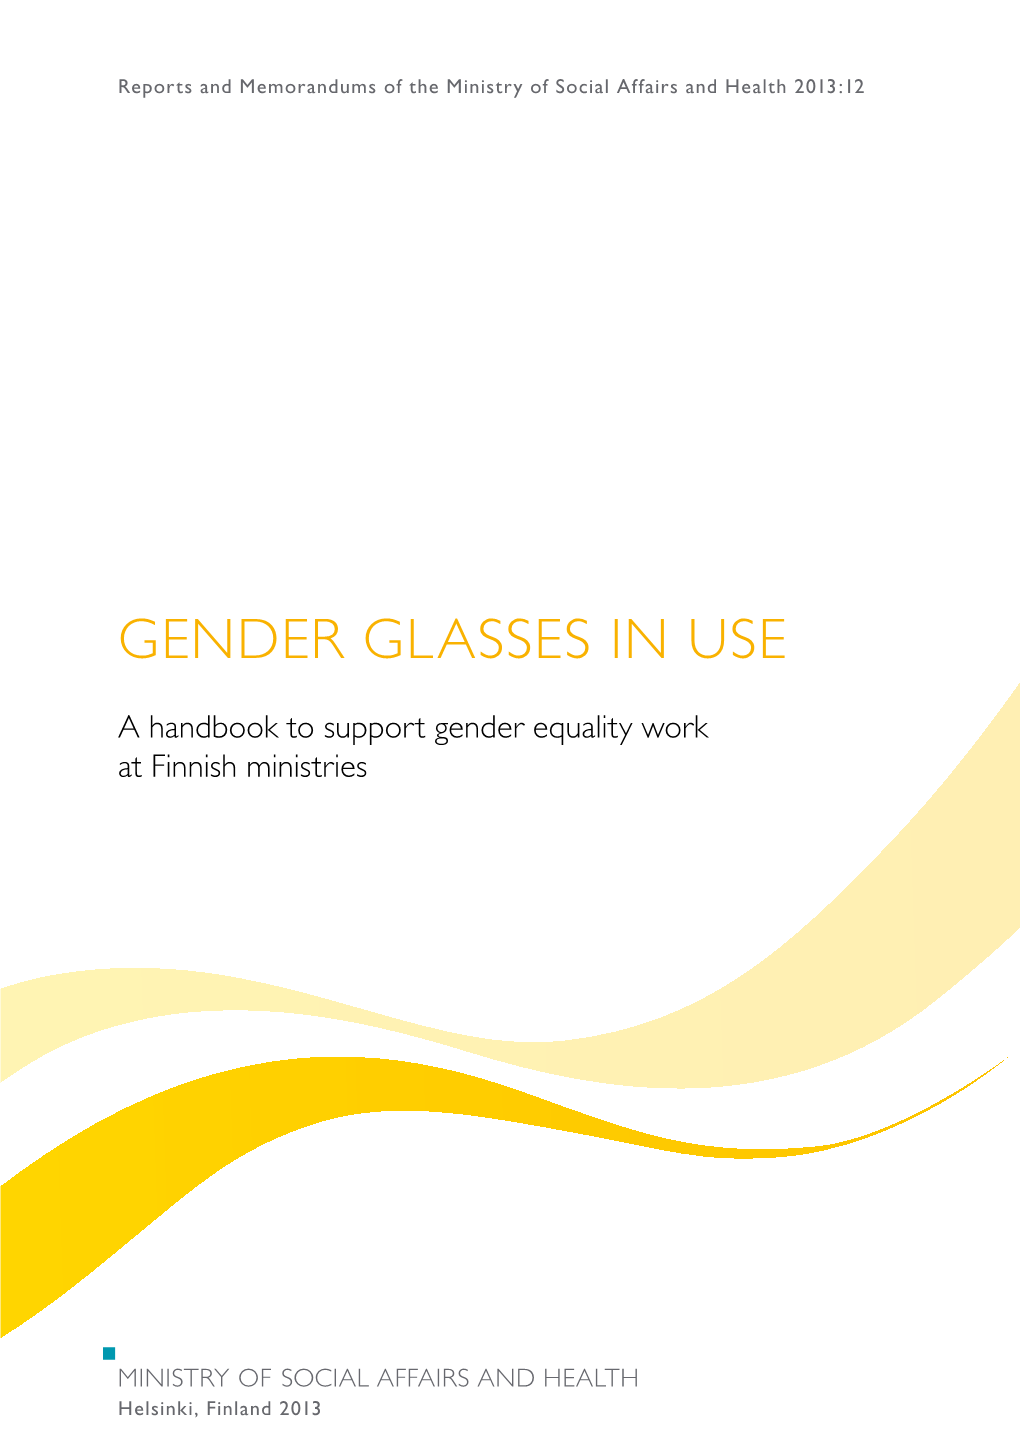 Gender Glasses in Use